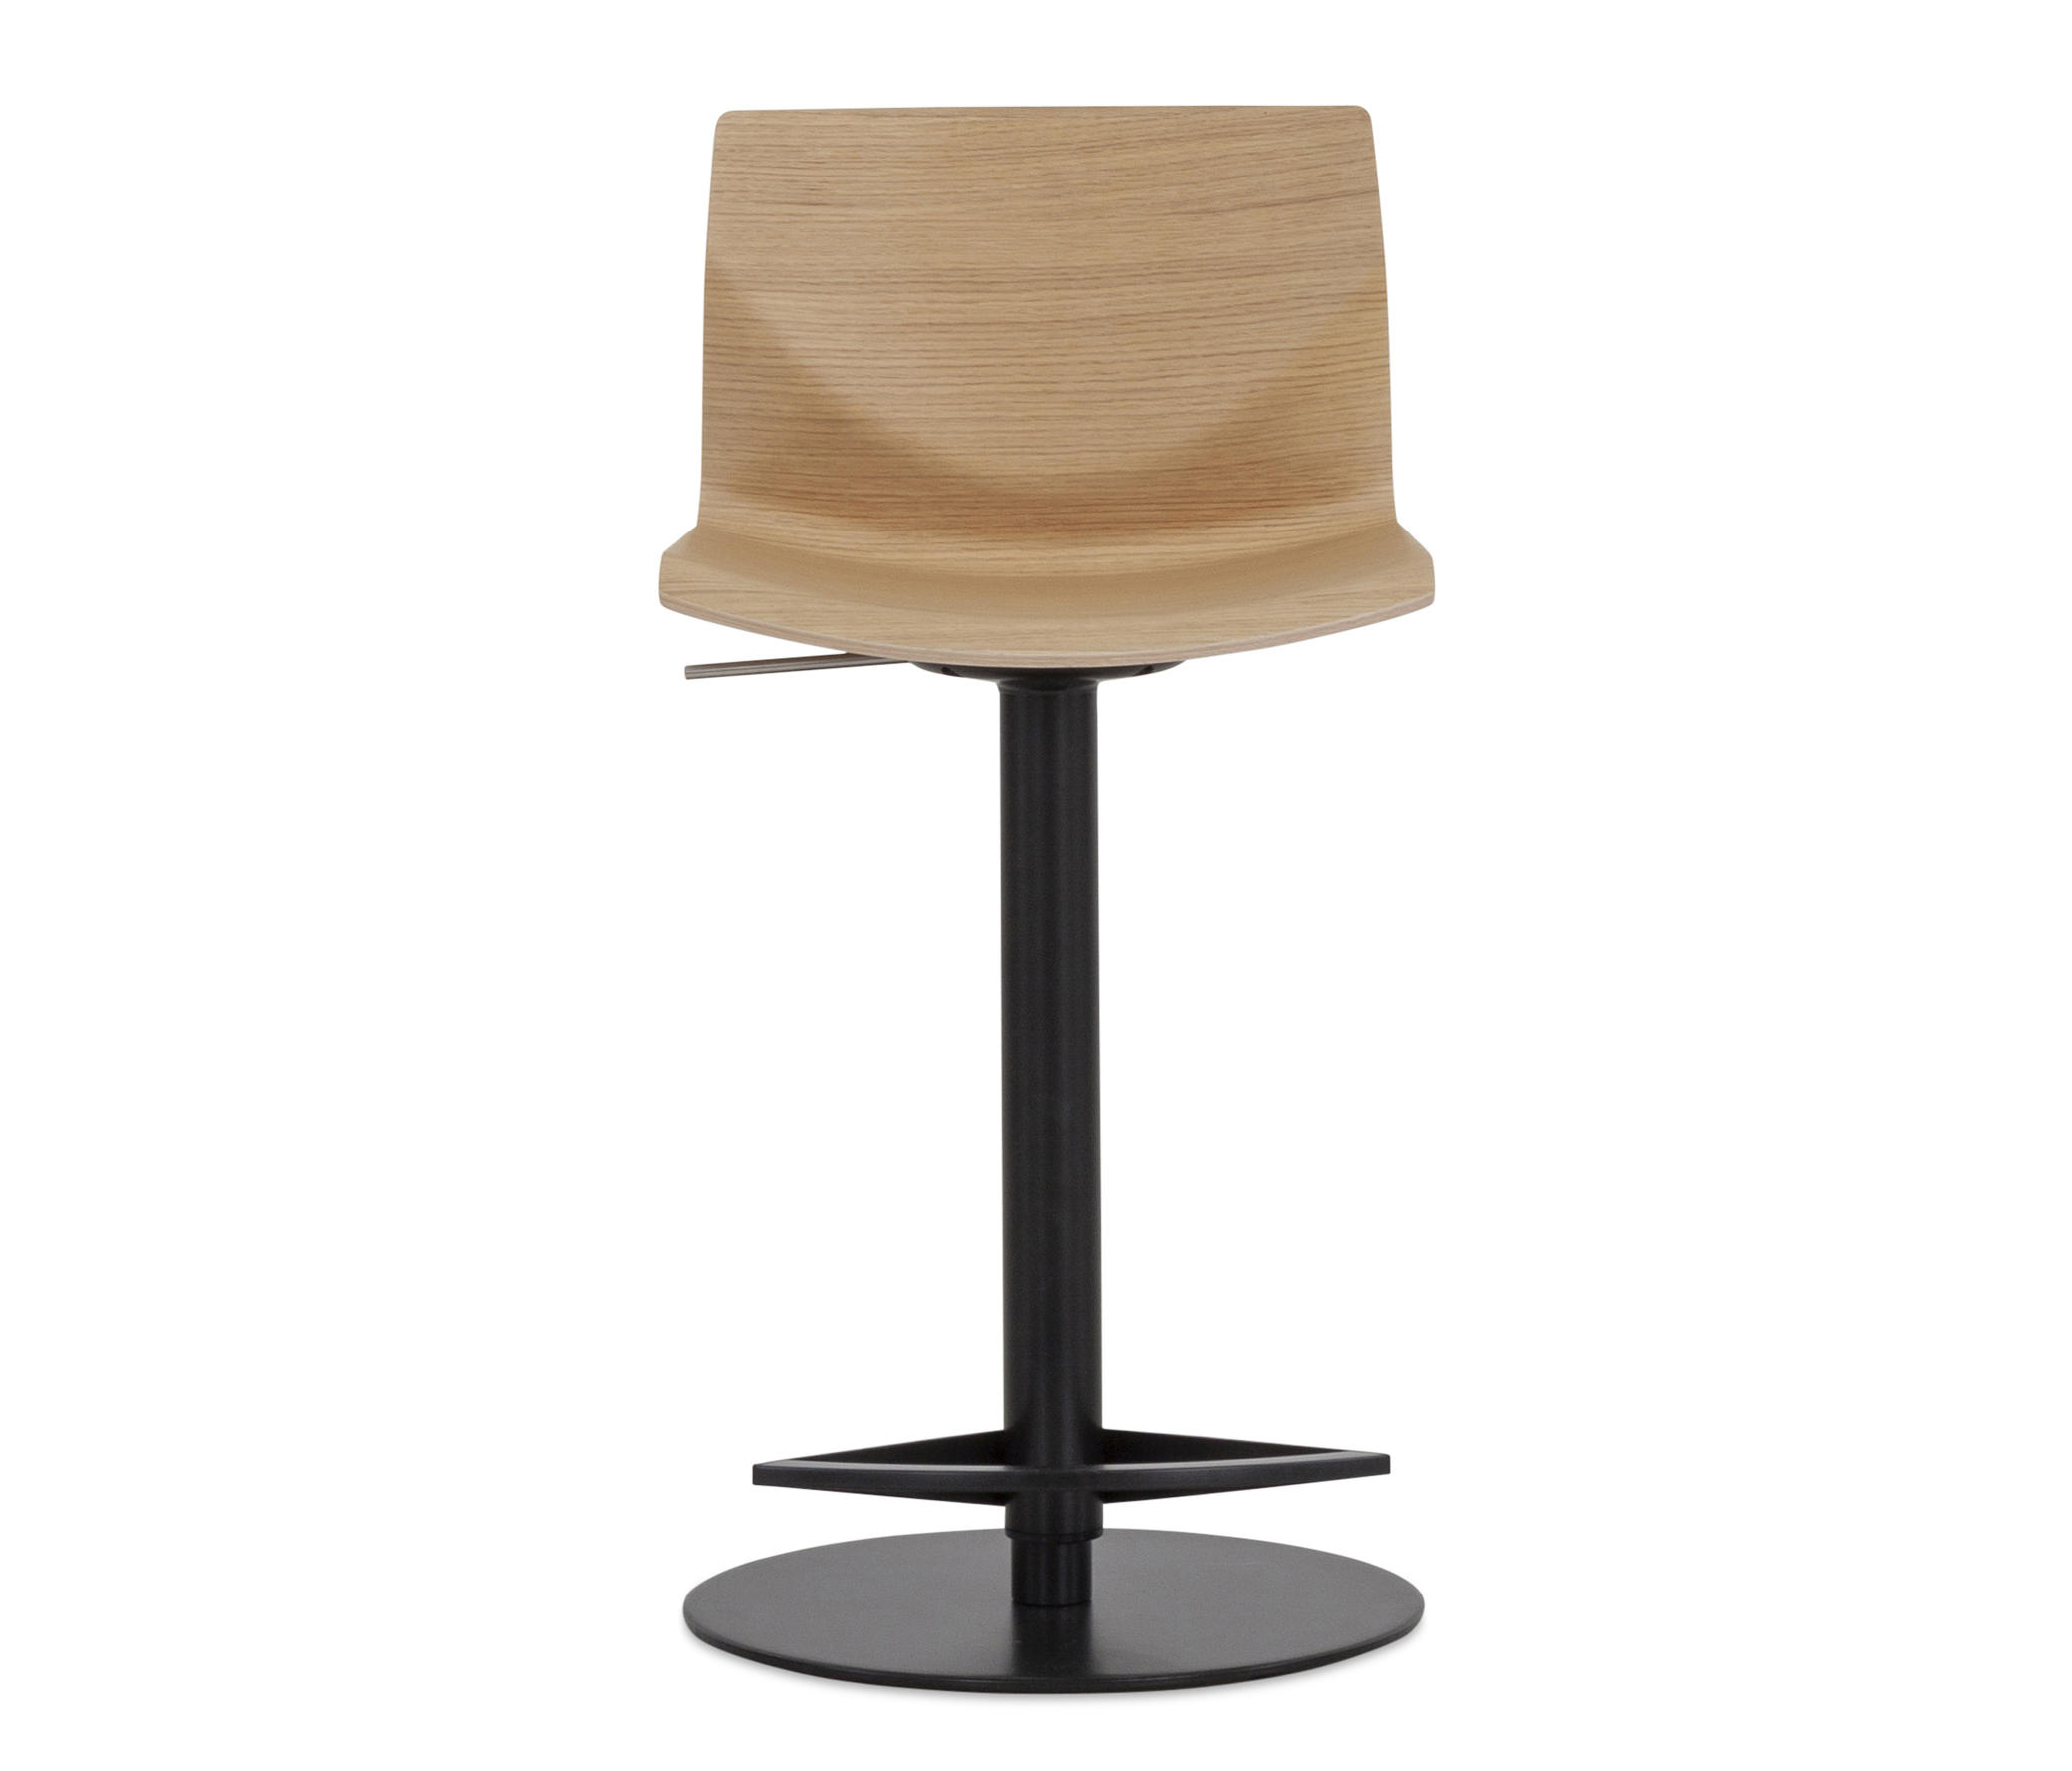 KAI STOOL - Bar stools from lapalma | Architonic